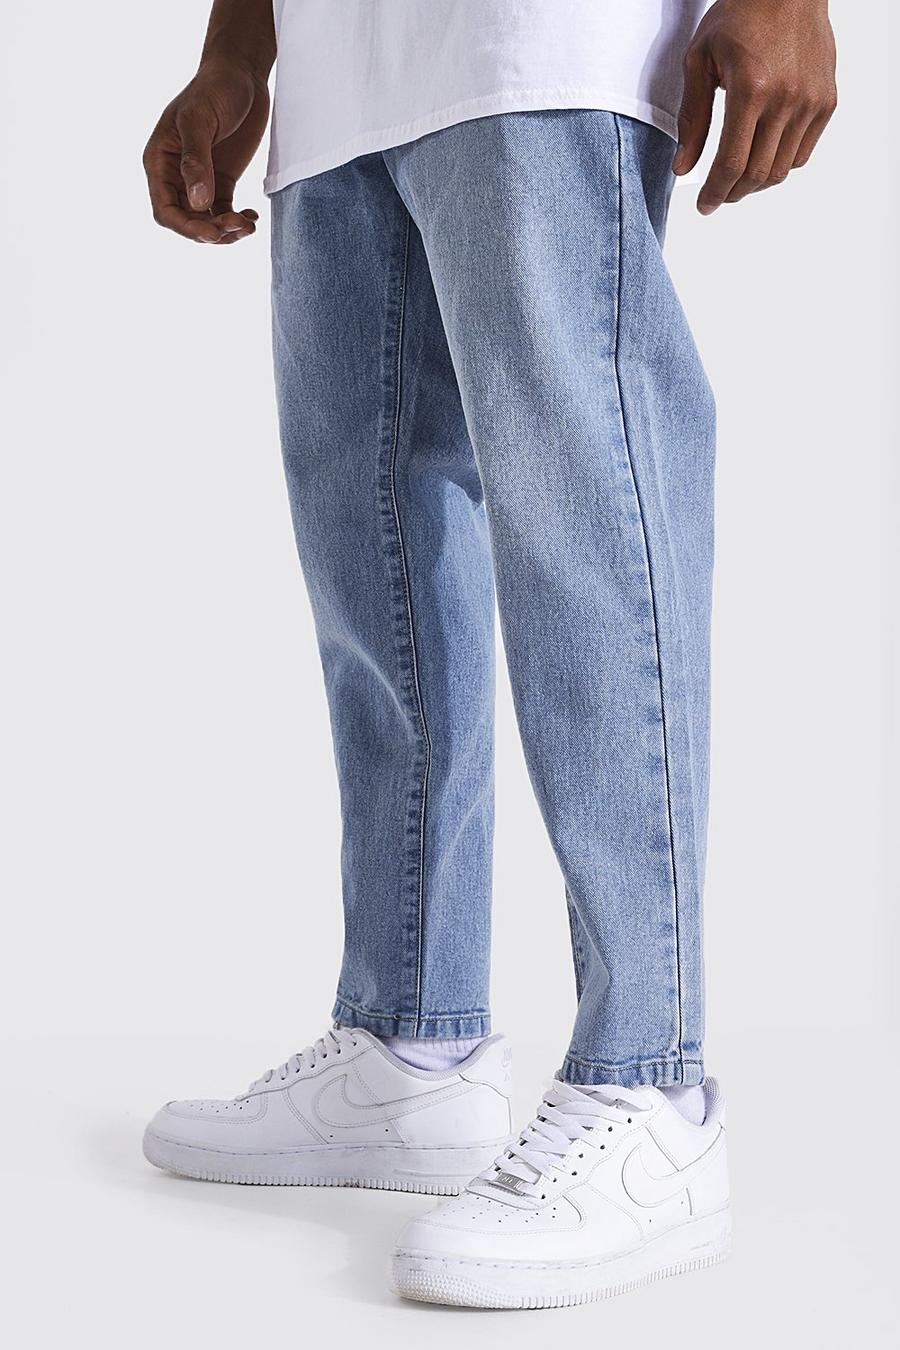 כחול בהיר blue ג'ינס מבד קשיח בגזרת קרסול צרה